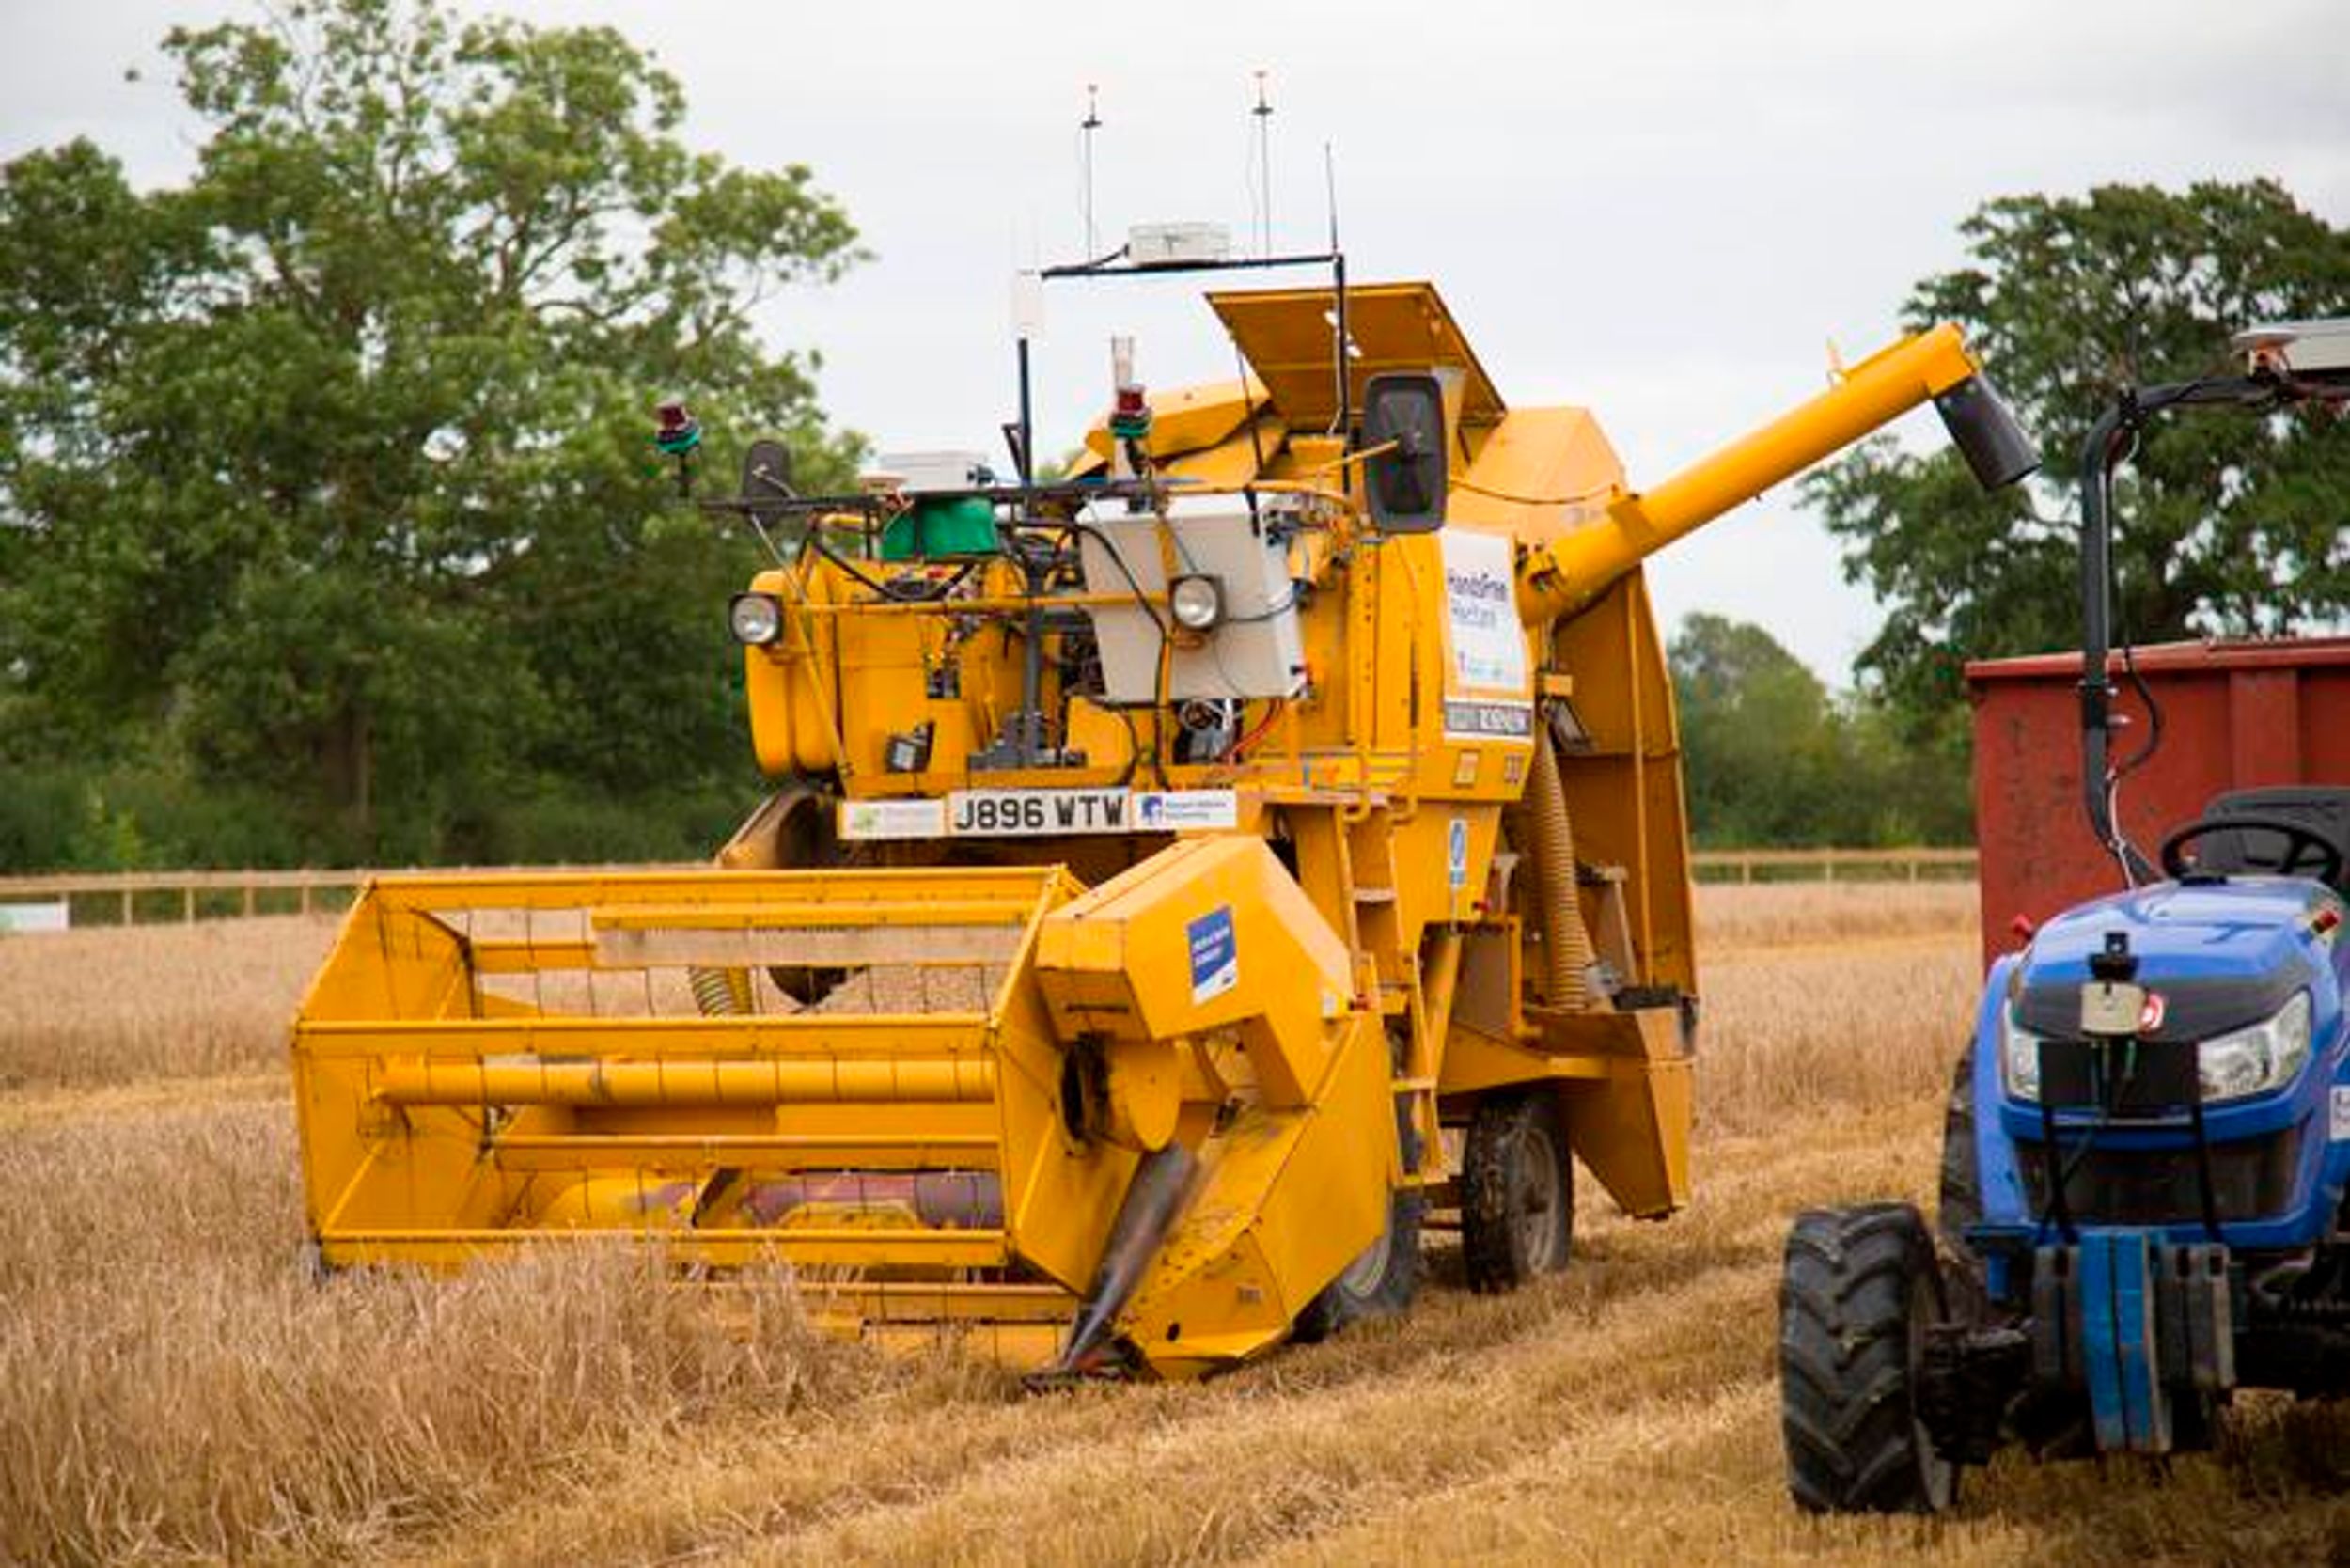 Autonomous Robots Plant, Tend, and Harvest Entire Crop of Barley